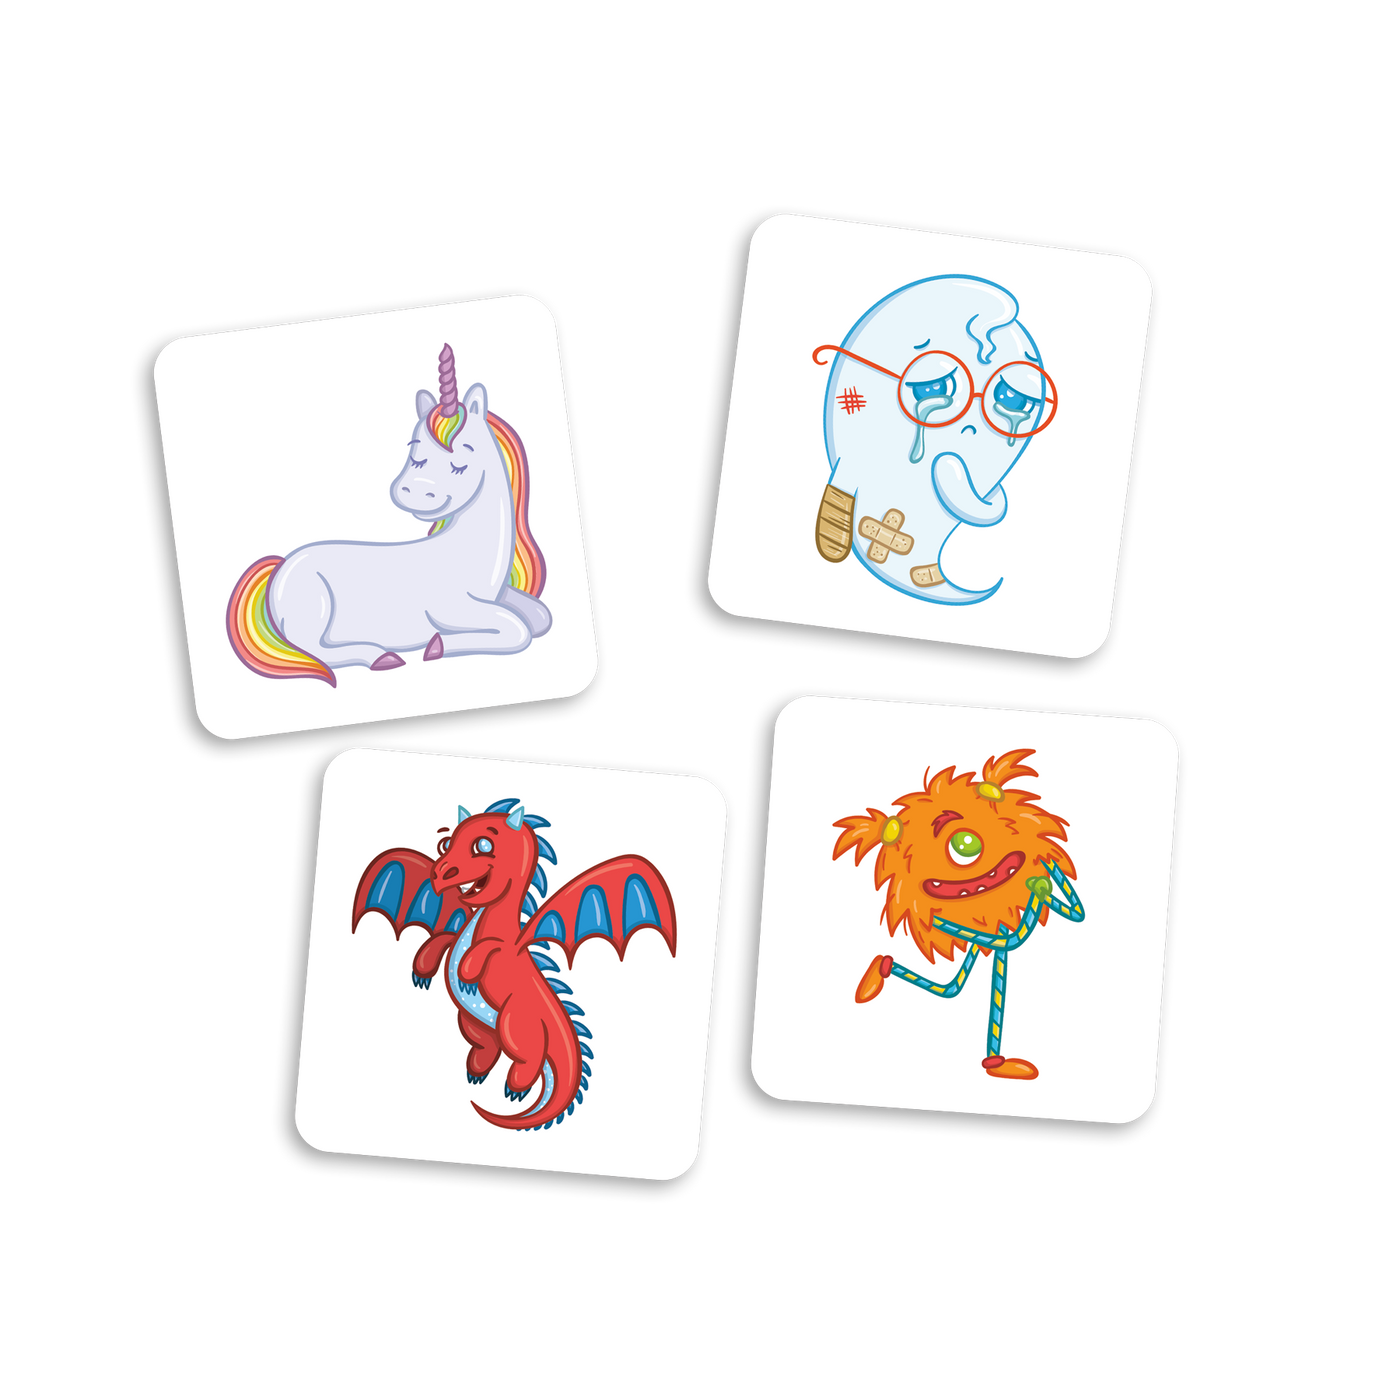 Dompteur de mémoire - Exemples de cartes-créatures (licorne arc-en-ciel, fantôme avec bobo, dragon rouge et monstre orange)